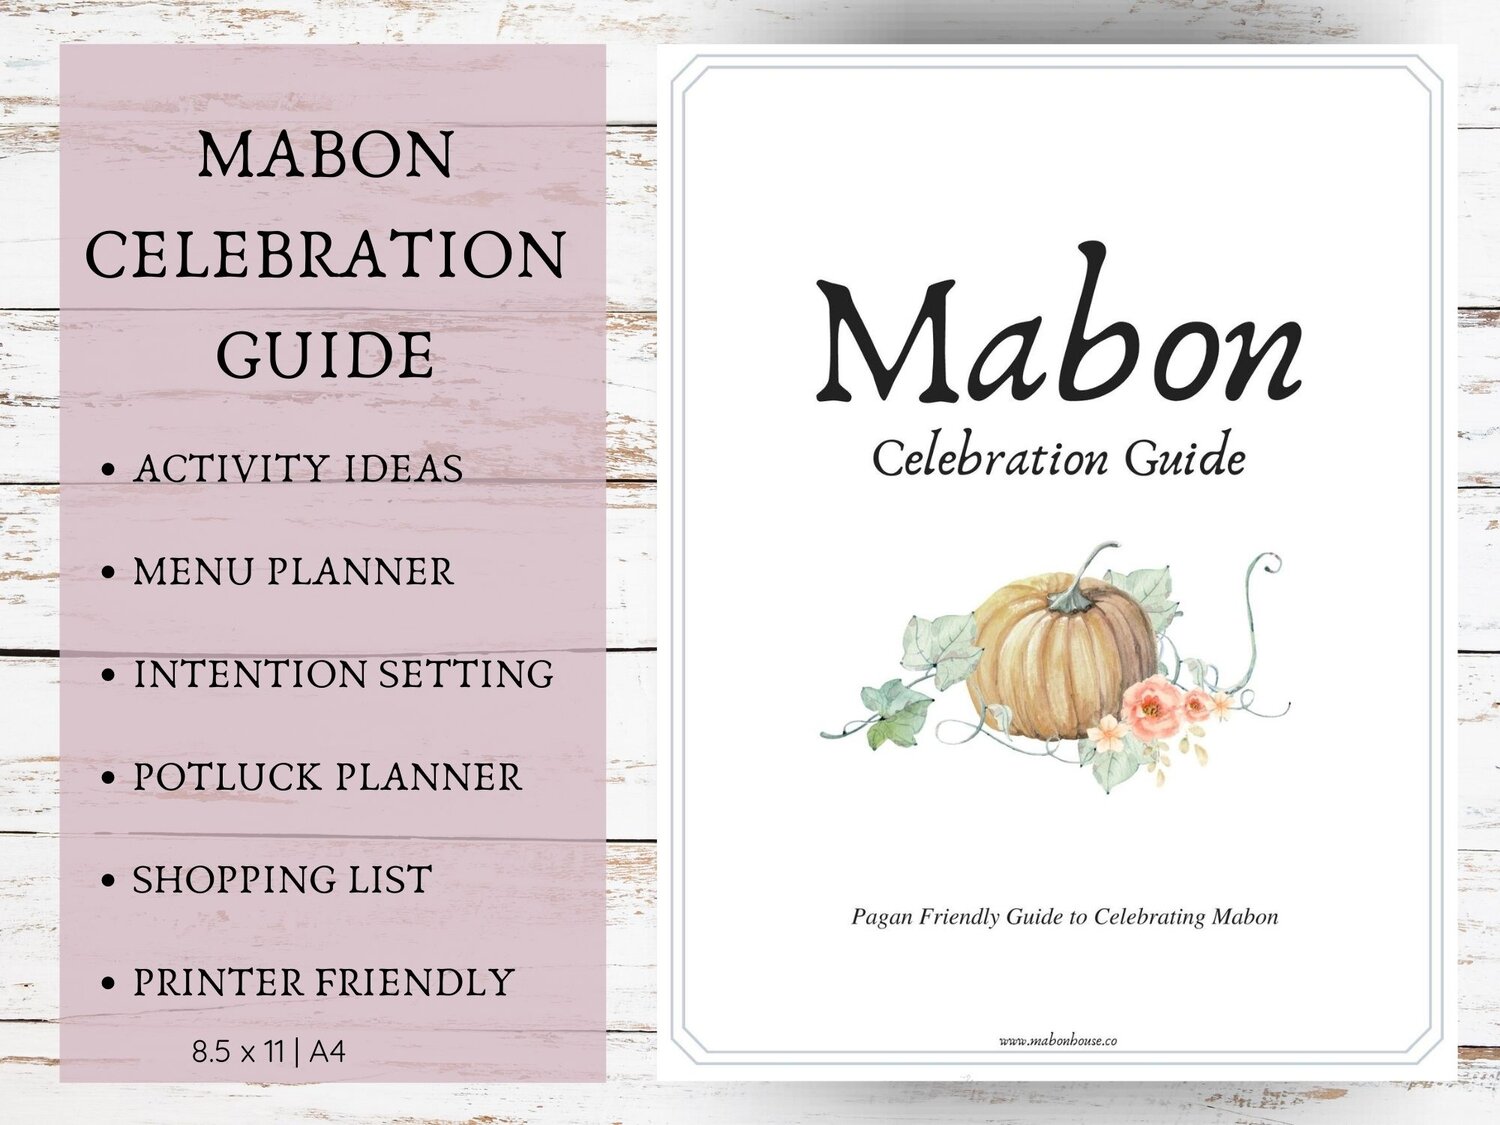 ¿Busca ideas e inspiración para una celebración Mabon moderna?  ¡Consulte nuestra Guía de celebración de Mabon!